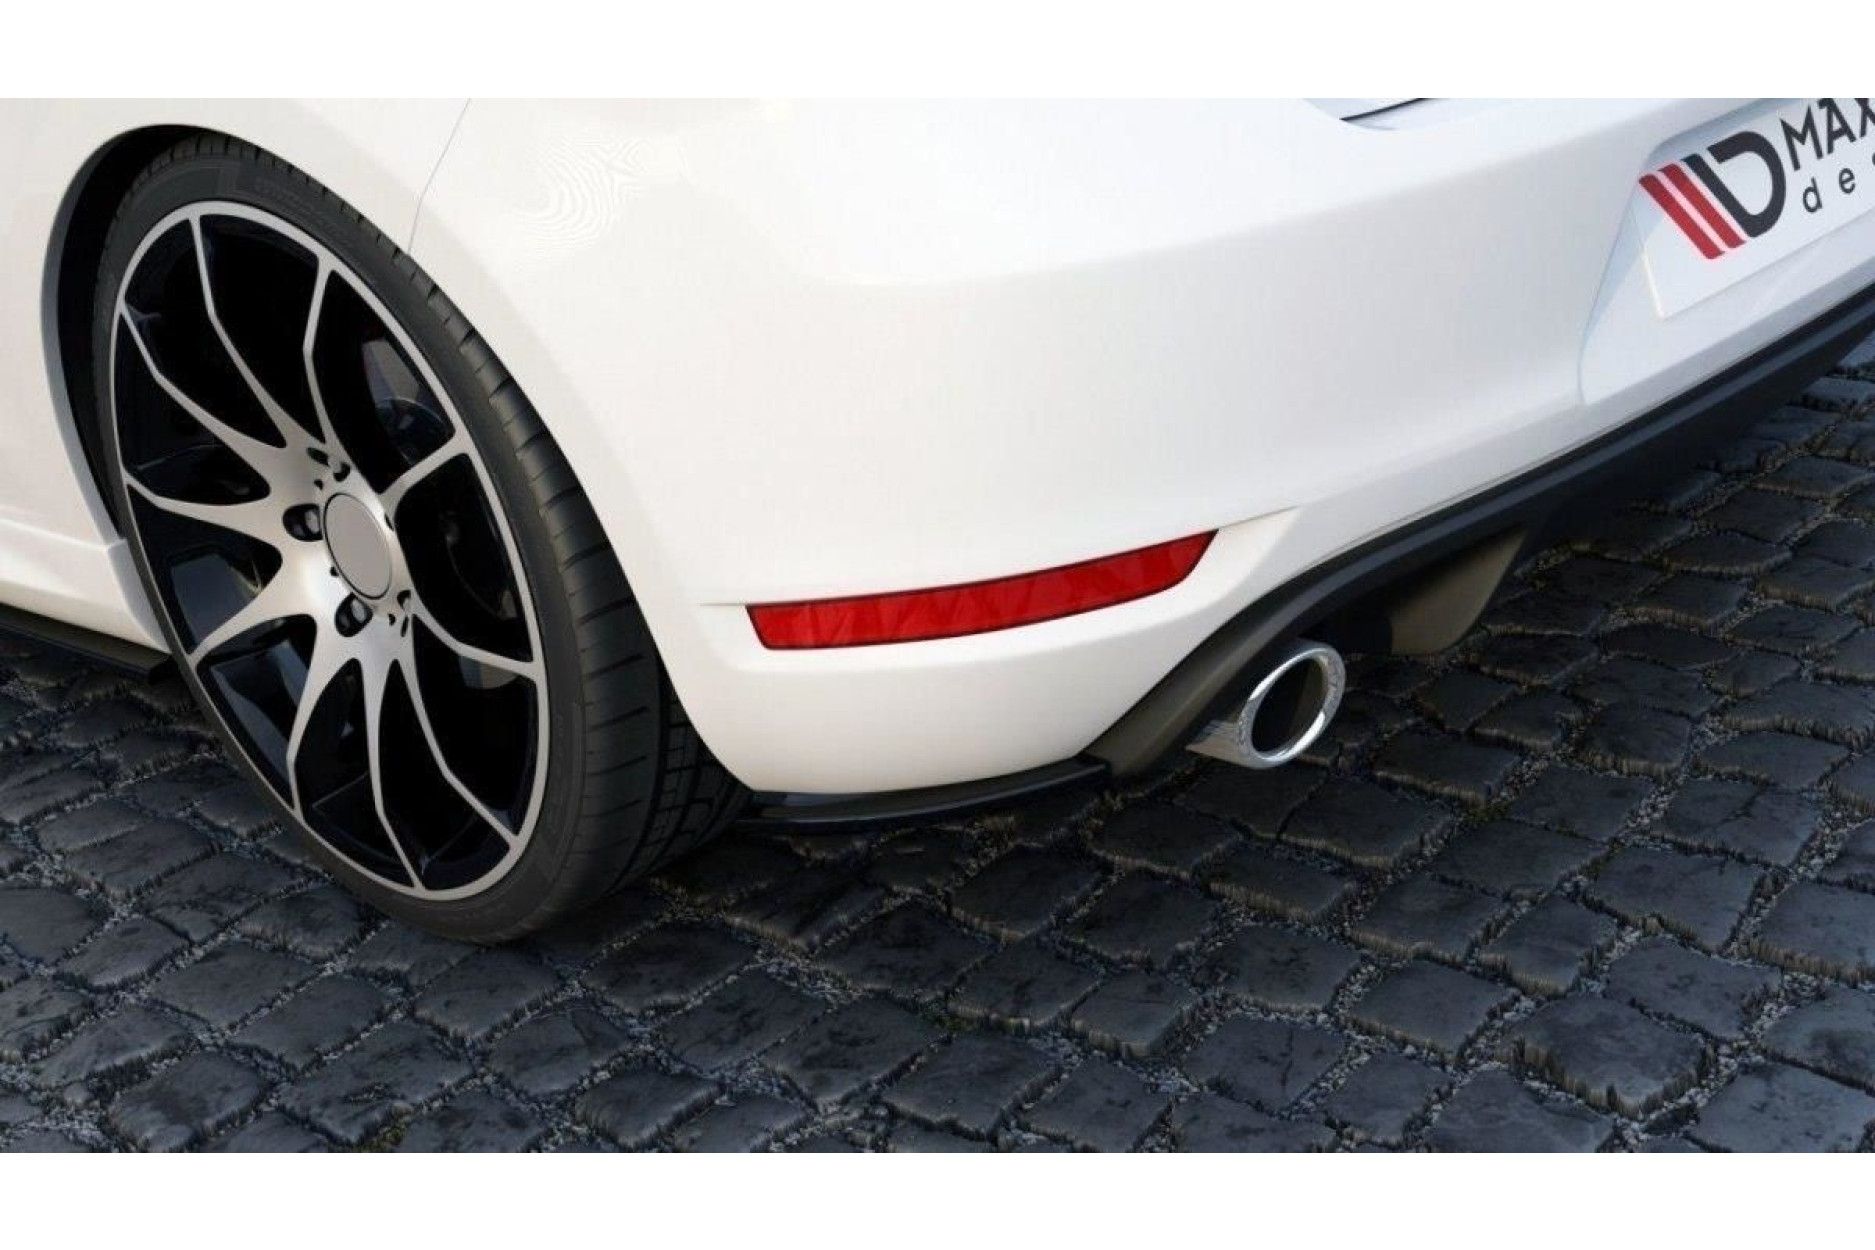 Maxton Design ABS Diffusor Seiten Eerwiterungen Flaps für Volkswagen Golf MK6 GTI|GTD schwarz hochglanz